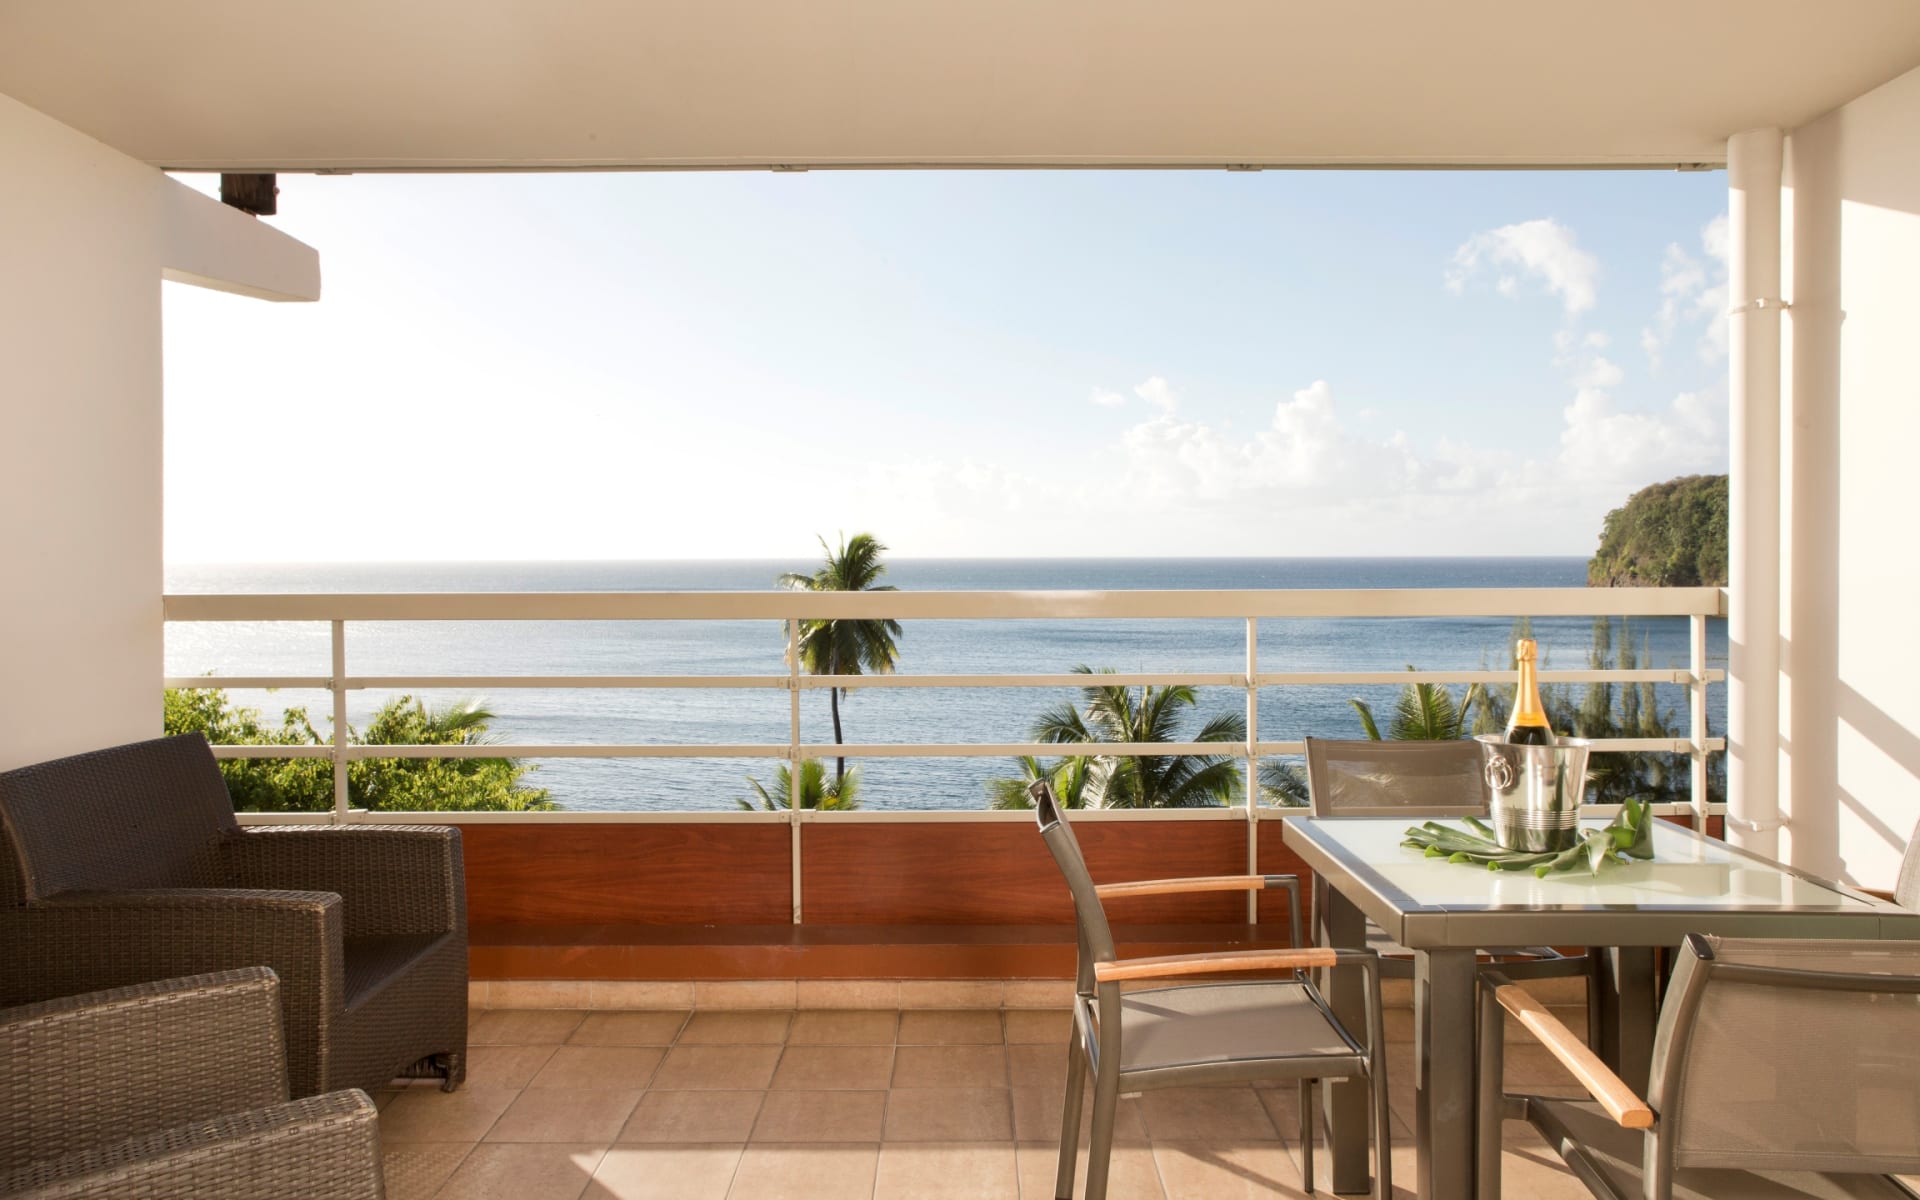 Balcony Overlooking ocean